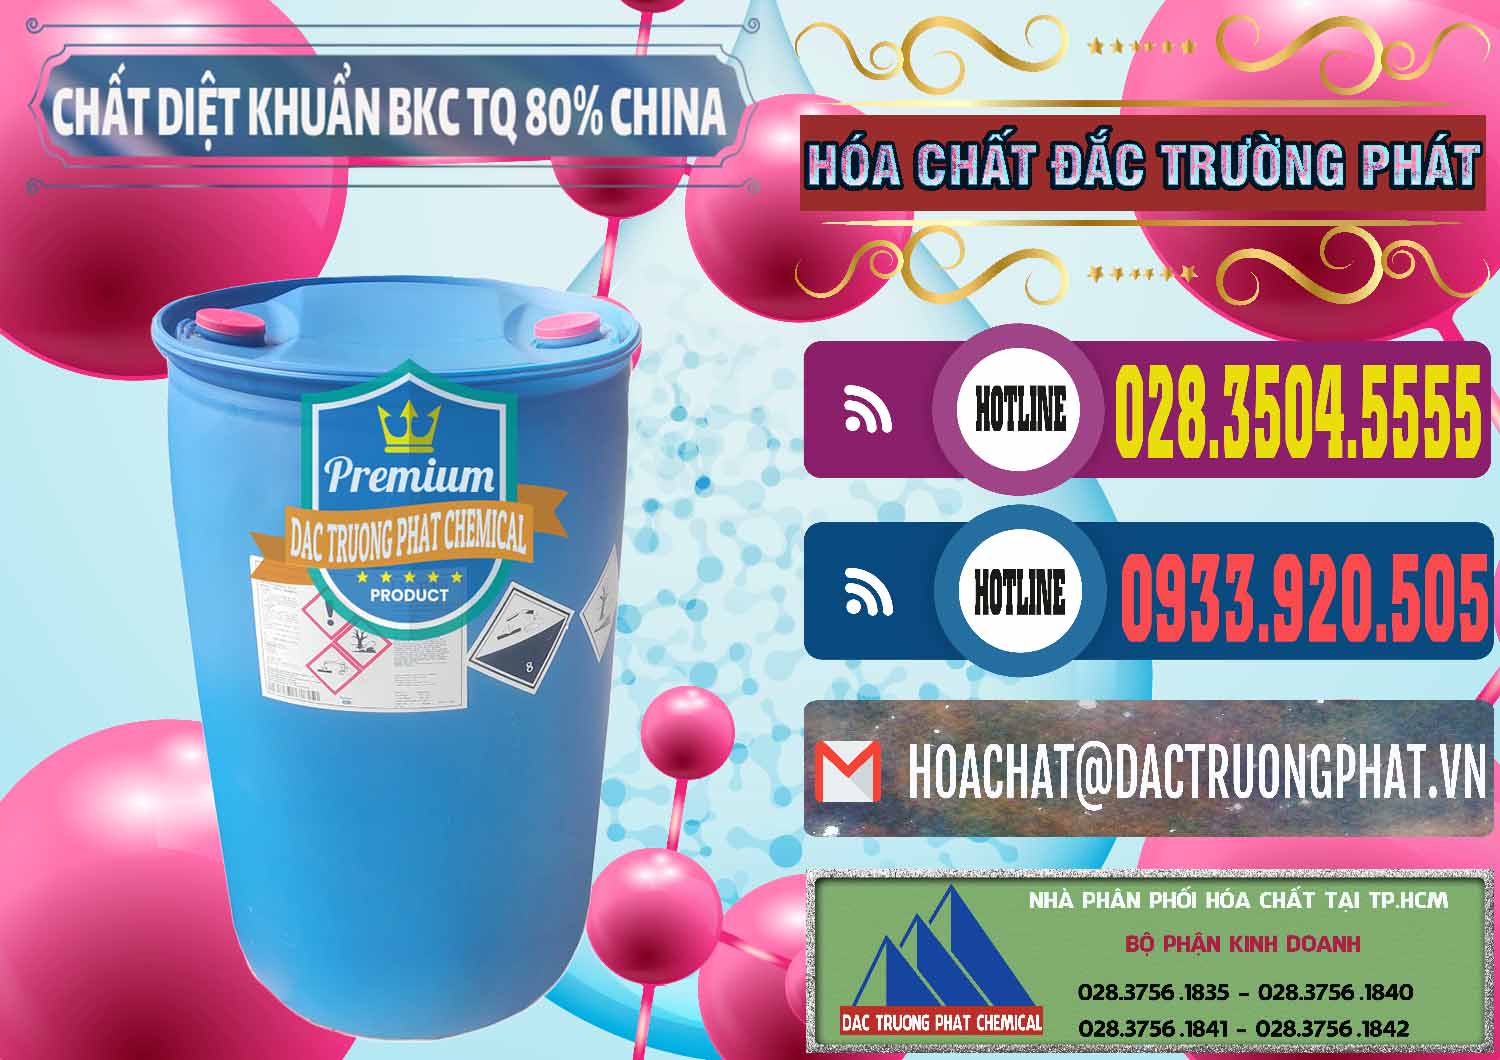 Cty chuyên cung cấp _ bán BKC - Benzalkonium Chloride 80% Trung Quốc China - 0310 - Cung ứng & phân phối hóa chất tại TP.HCM - muabanhoachat.com.vn